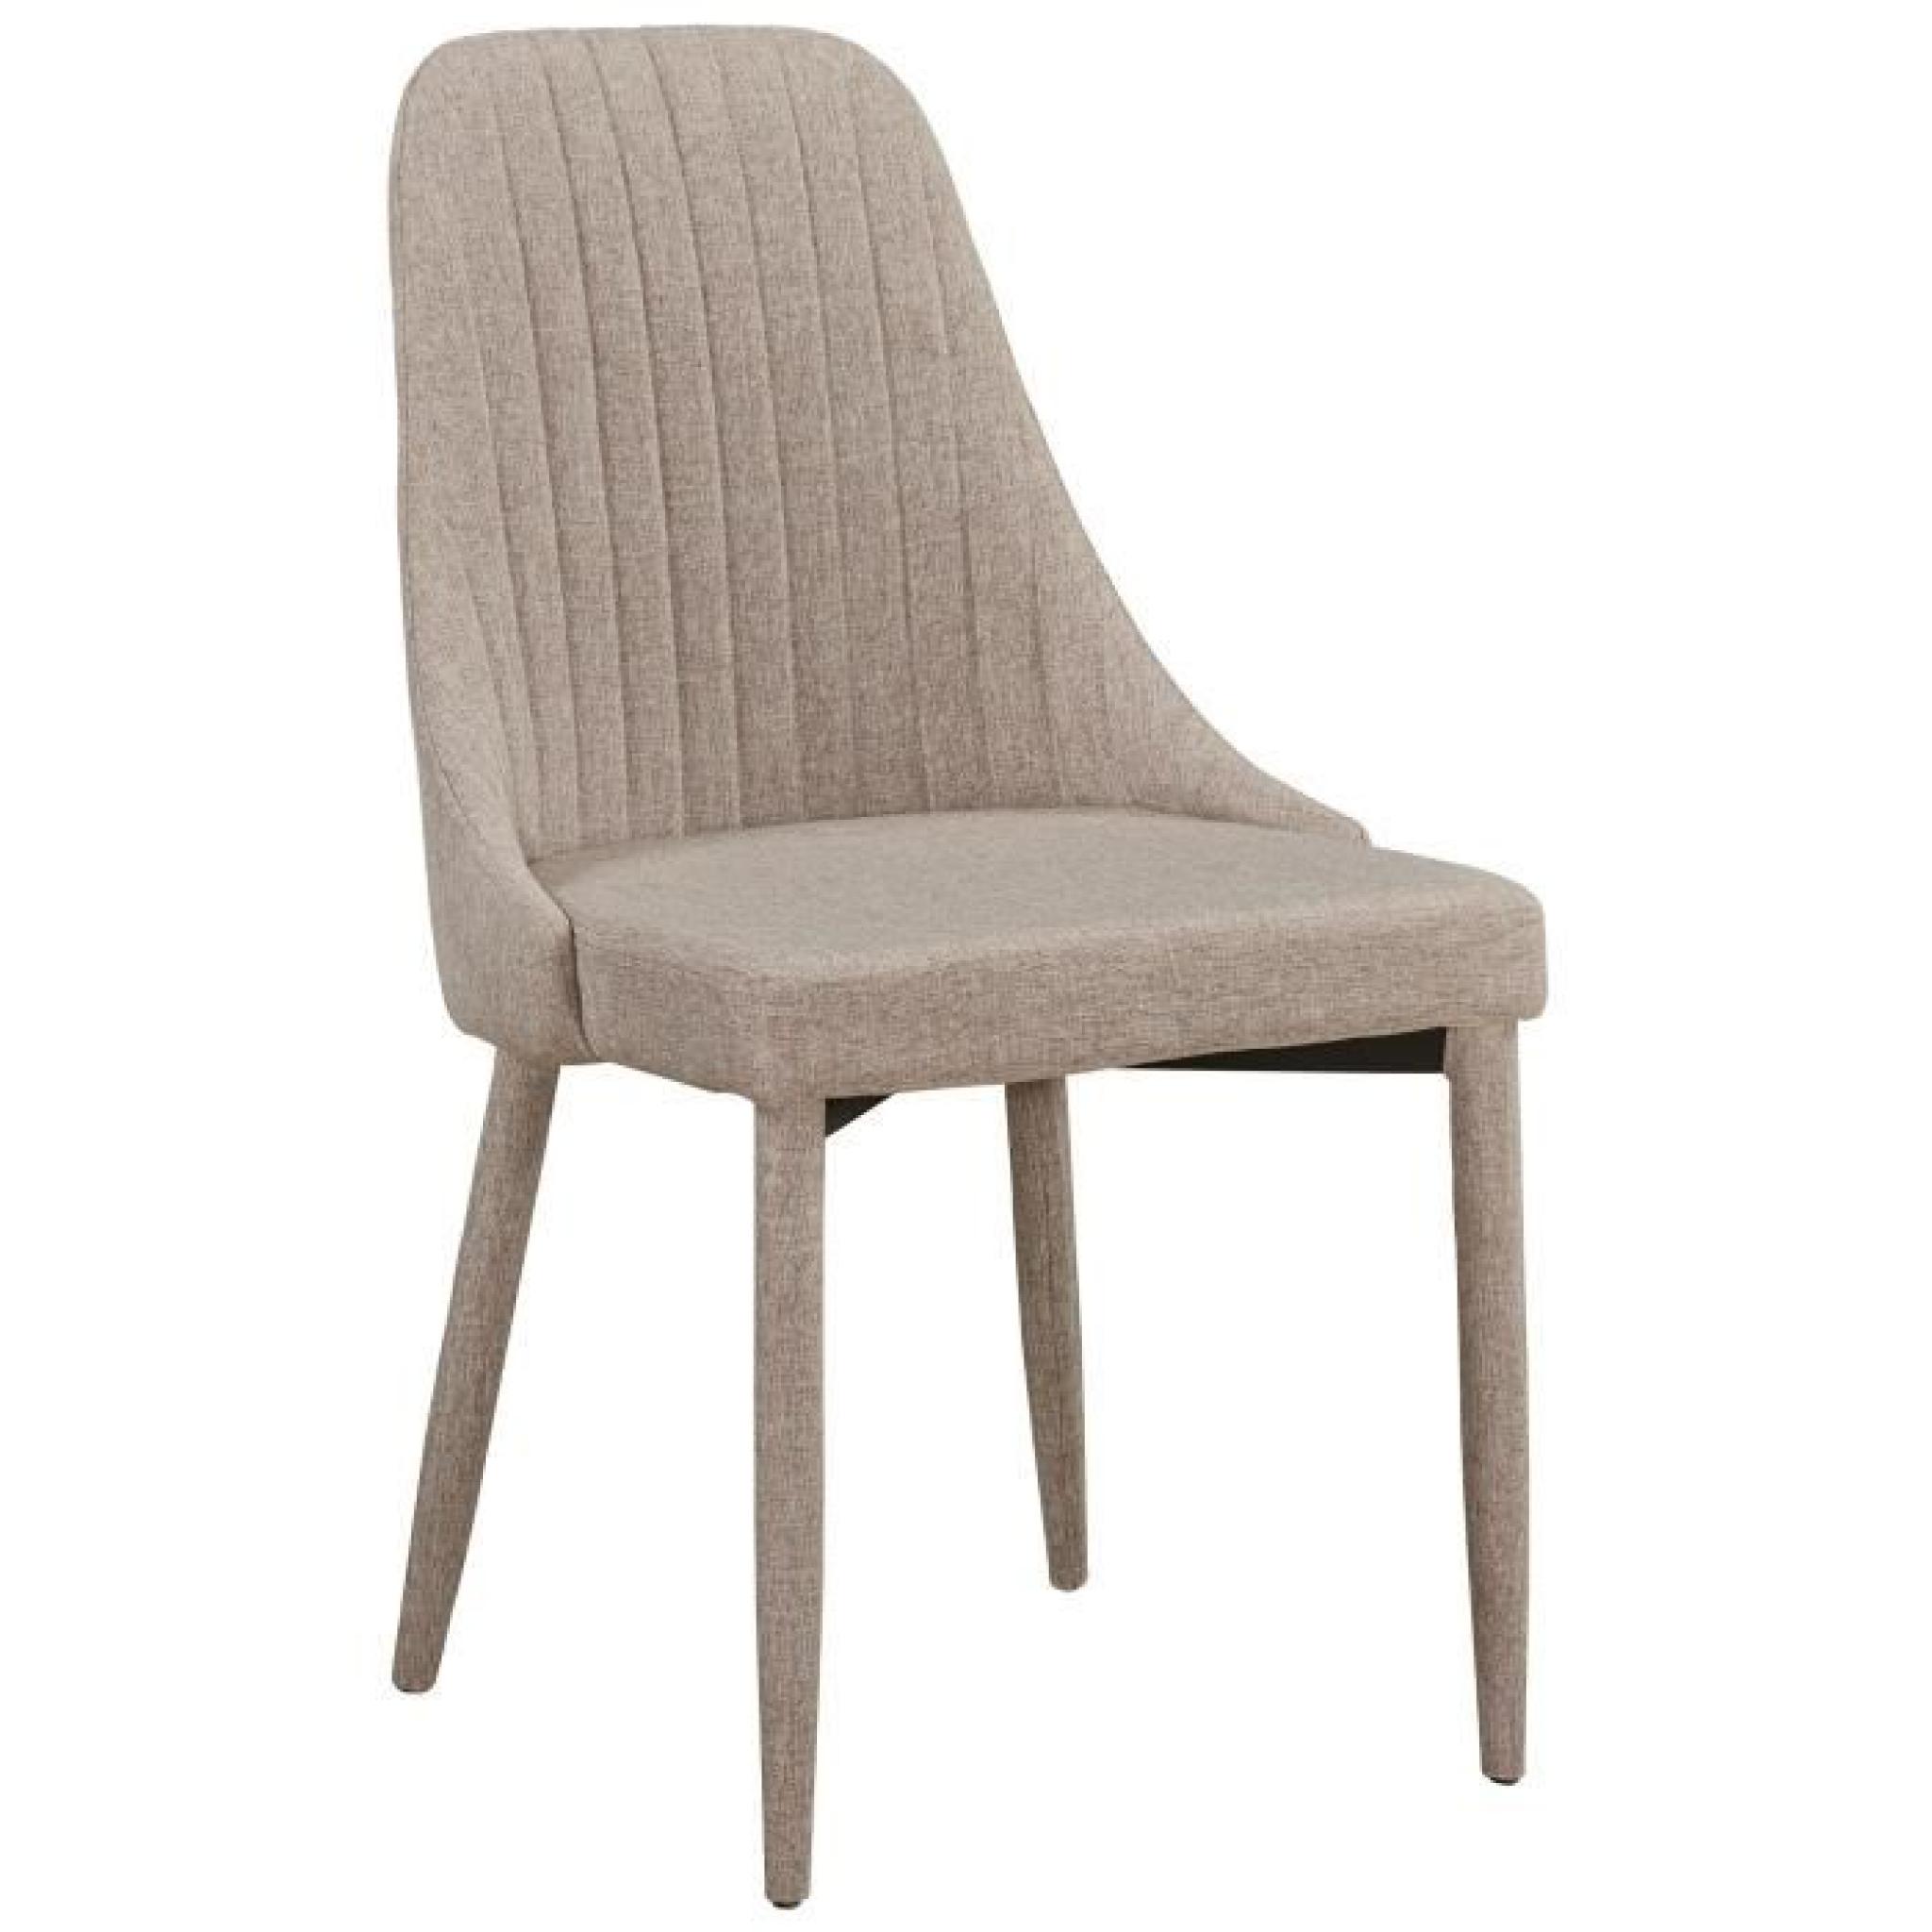 Chaise en tissus design couture verticale coloris beige